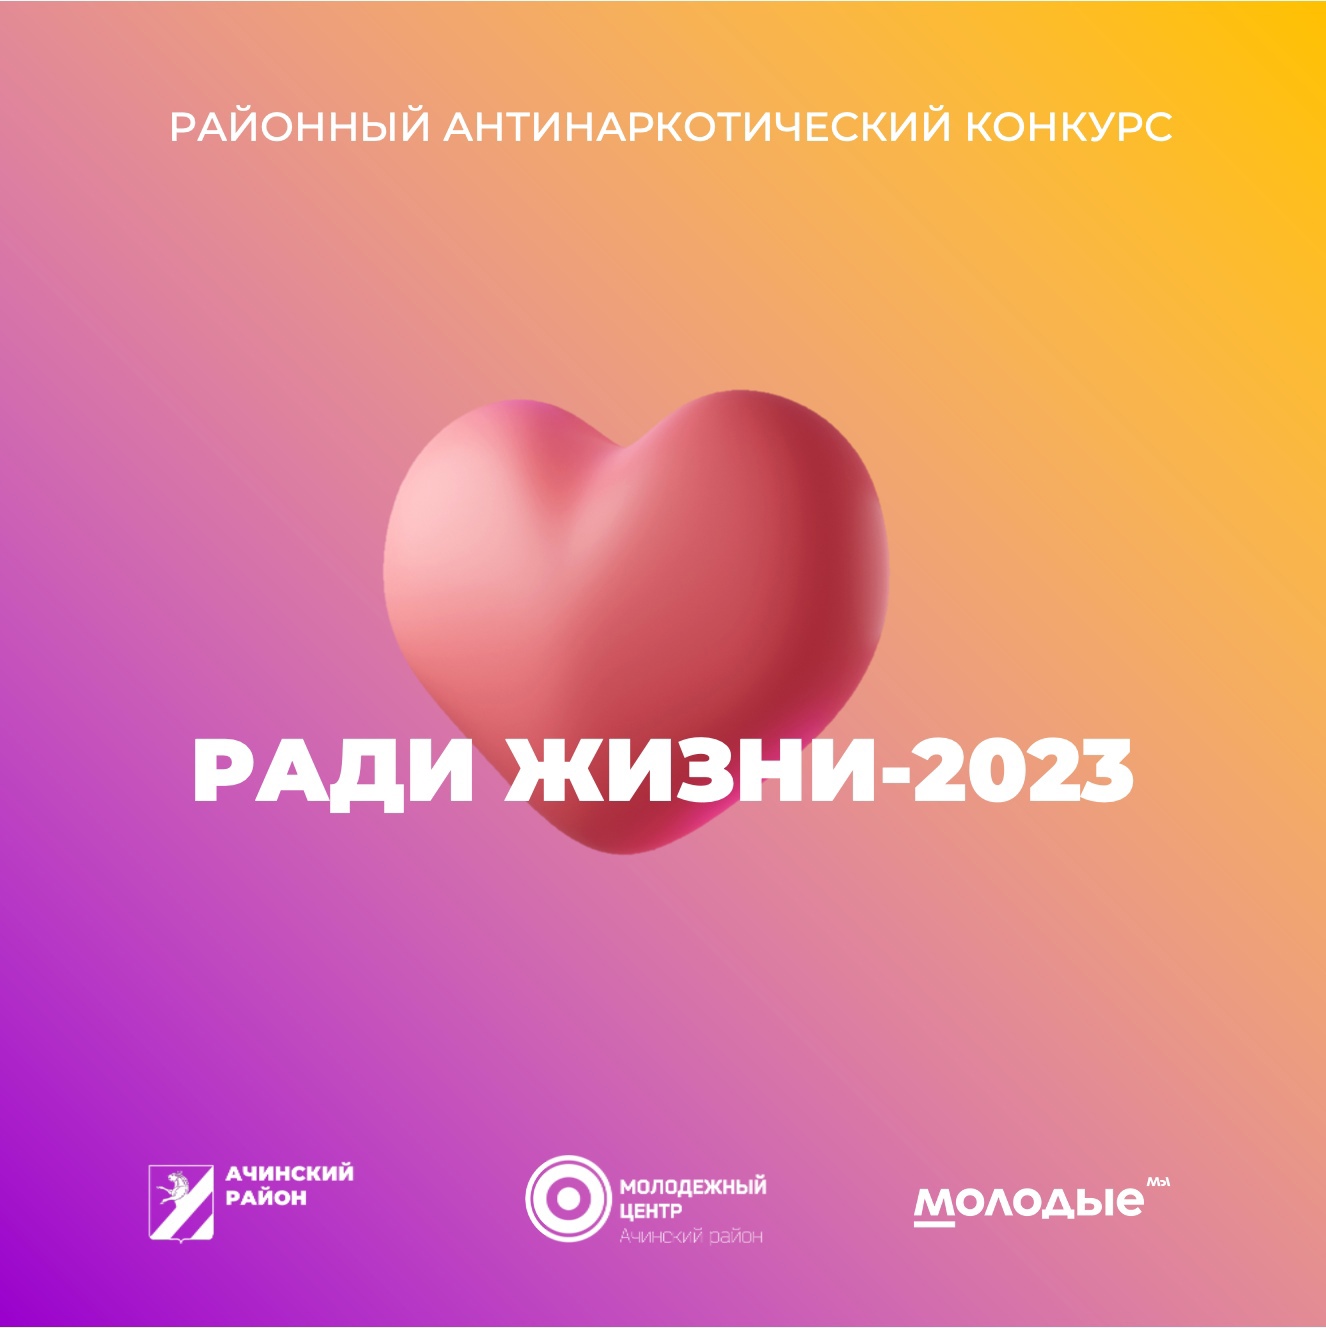 Районный антинаркотический конкурс «Ради жизни-2023».